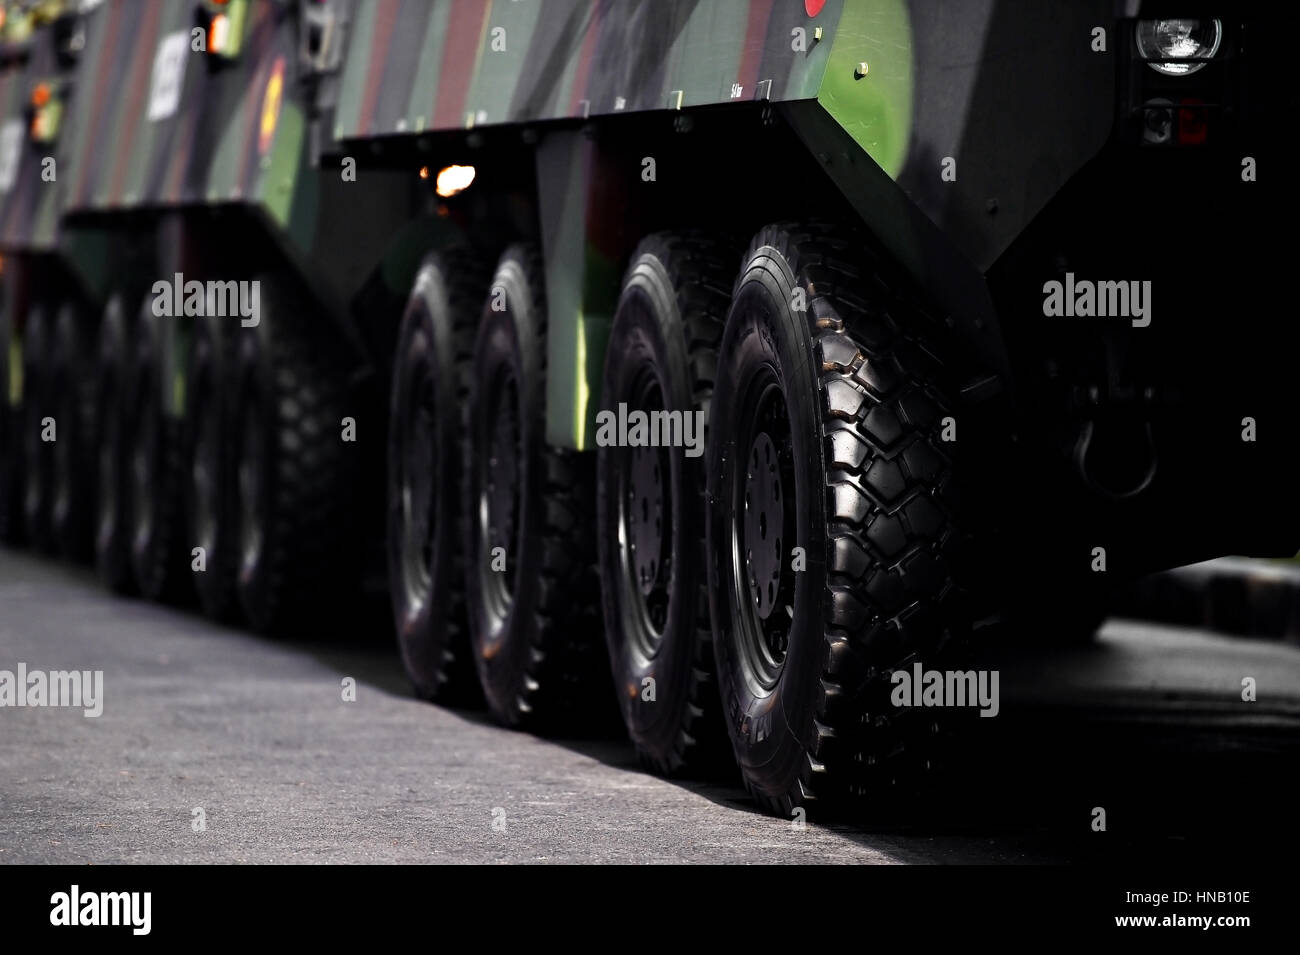 Dettaglio shot con veicolo blindato ruote durante la parata militare Foto Stock